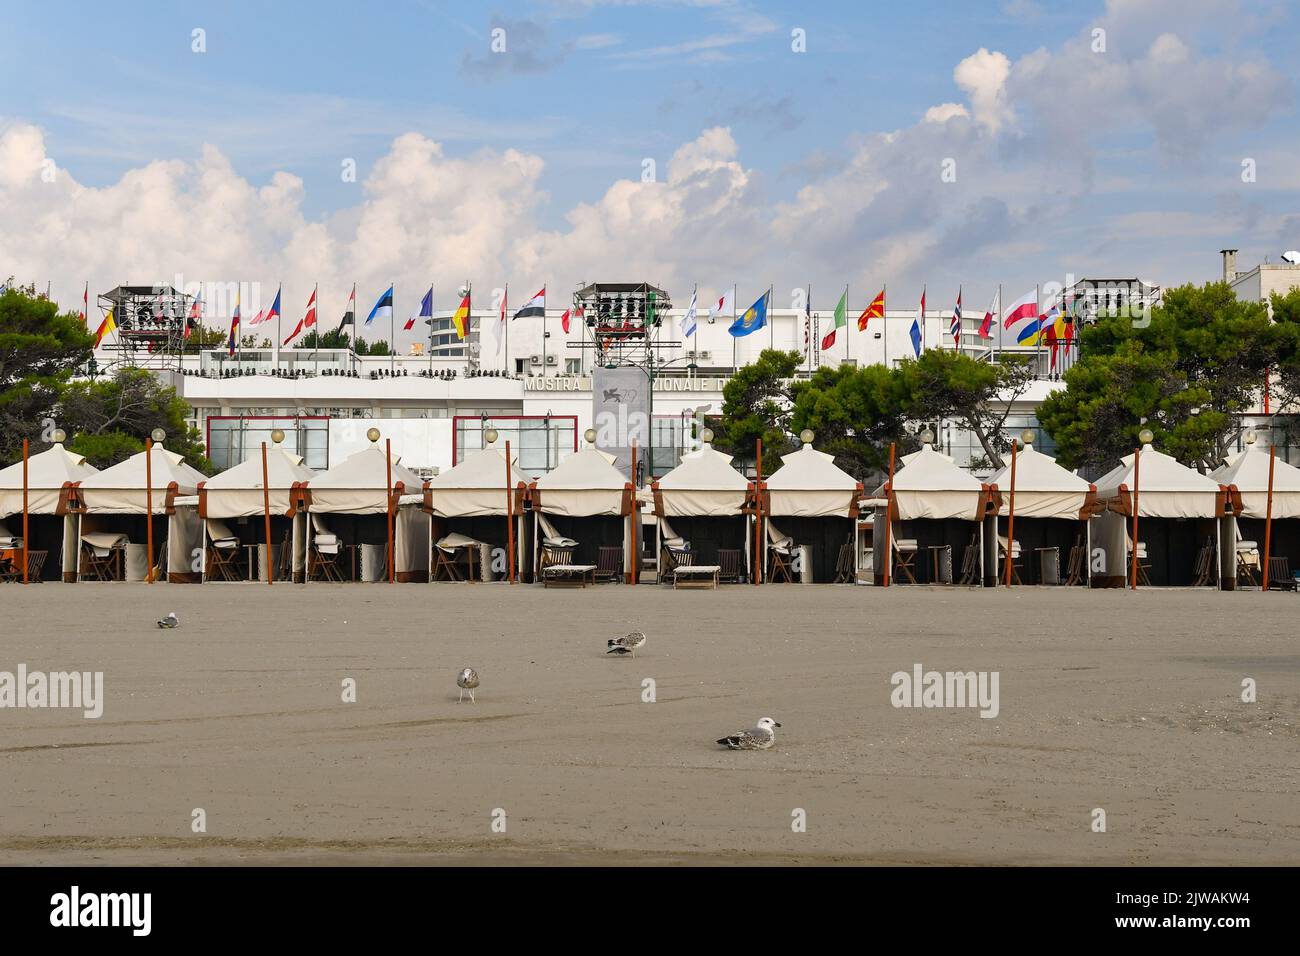 La playa frente al Cinema Palace, sede del Festival Internacional de Cine de Venecia 79th, Lido de Venecia, Venecia, Véneto, Italia Foto de stock